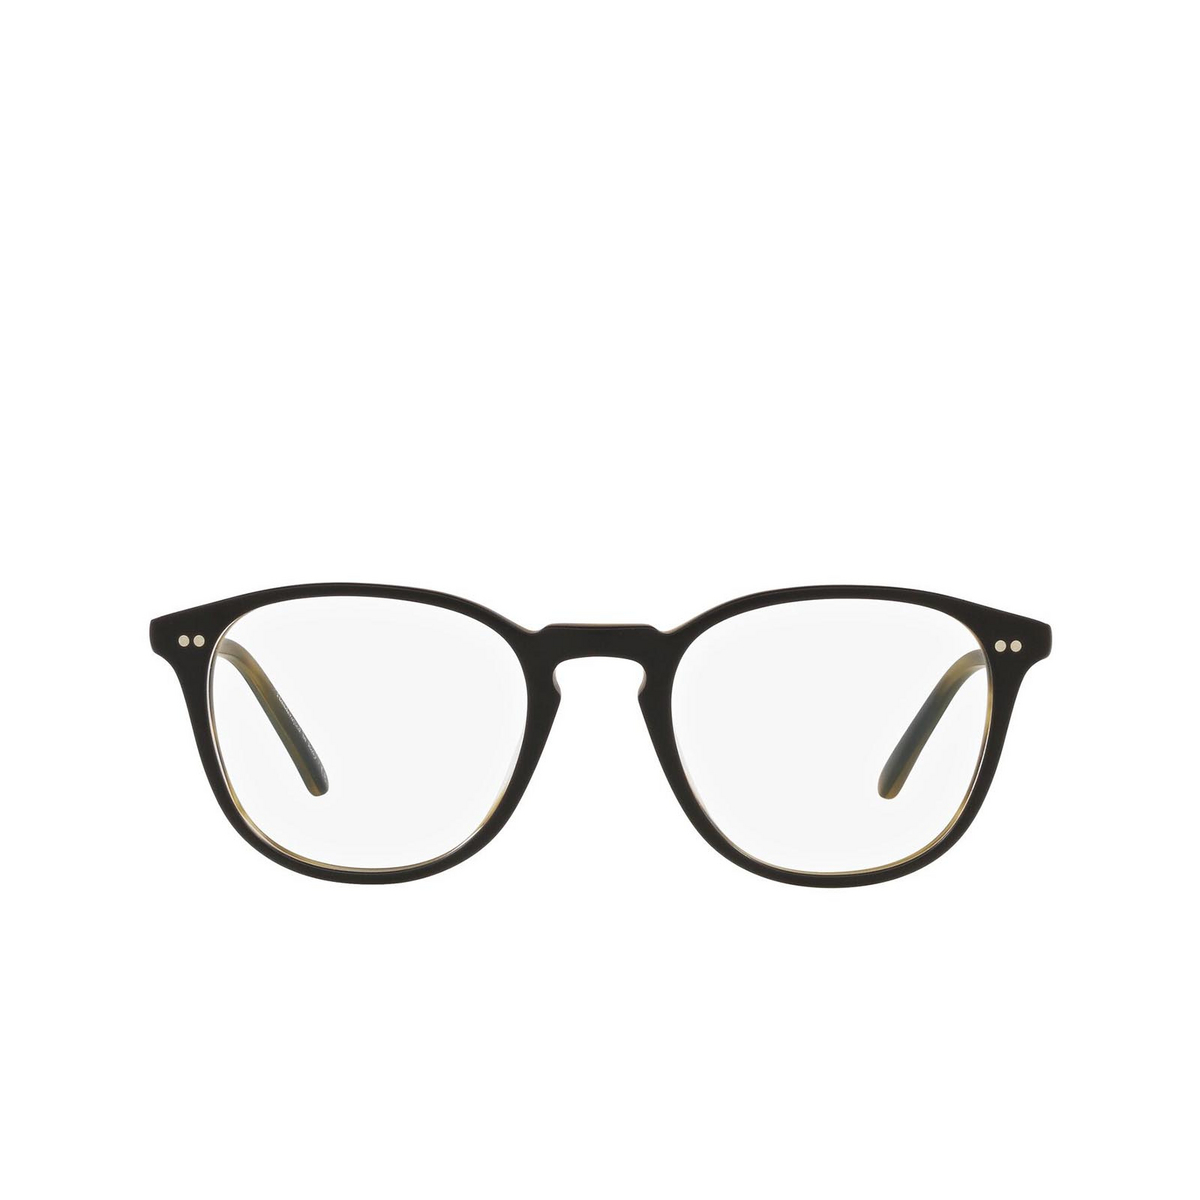 Oliver Peoples® Square Eyeglasses: OV5414U color Semi Matte Black / Olive Tortoise 1453 - 1/3.